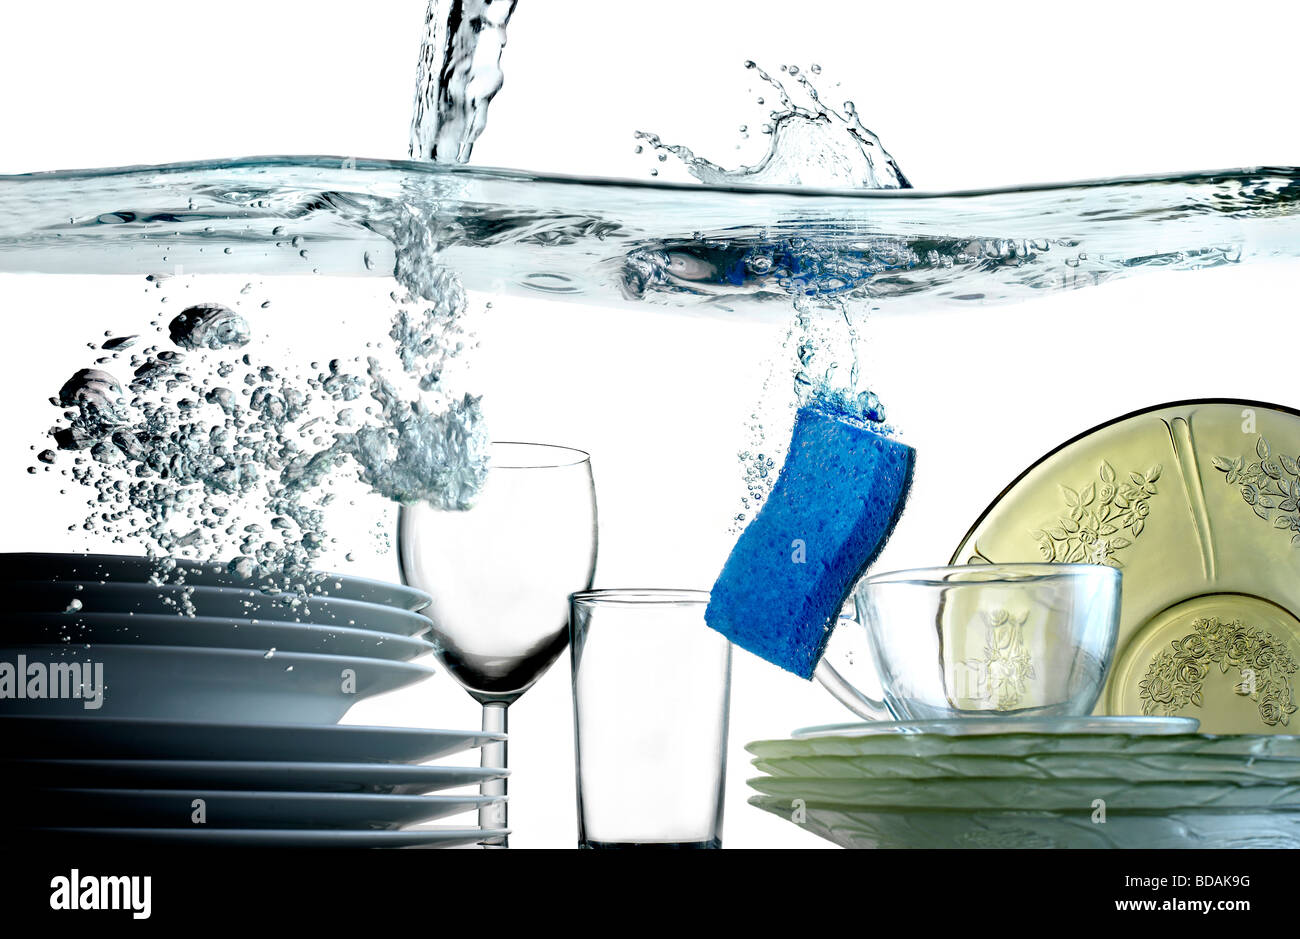 Wasser gießen in eine Wanne voller Teller Gläser Schalen und einem blauen Schwamm absteigend ins Becken Stockfoto